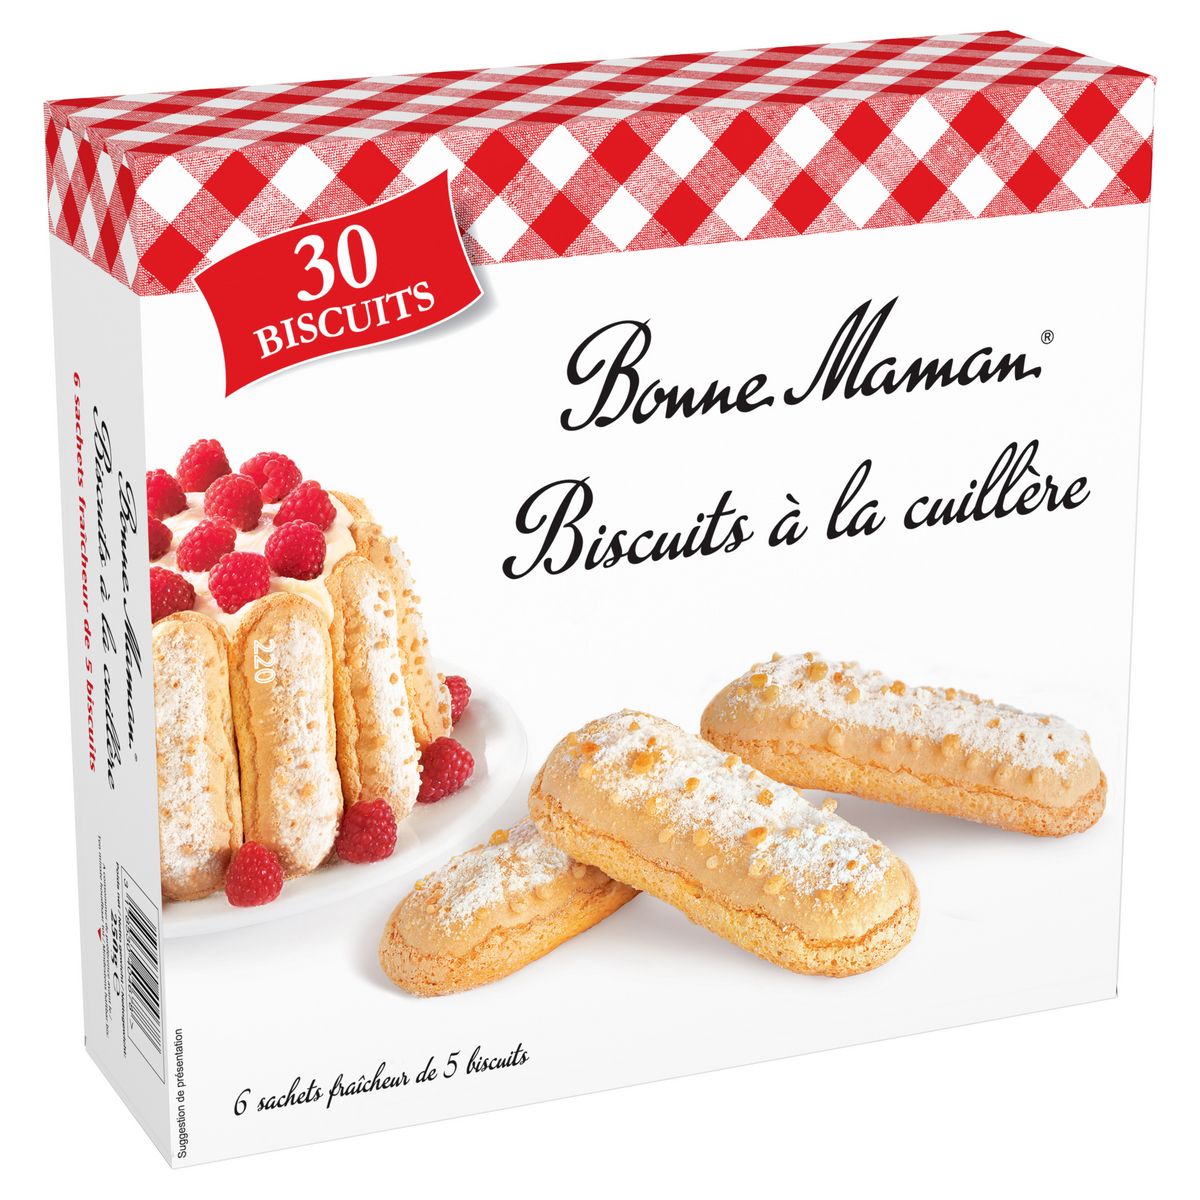 BONNE MAMAN Biscuits à la cuillère, sachets fraîcheur 6x5 biscuits 250g